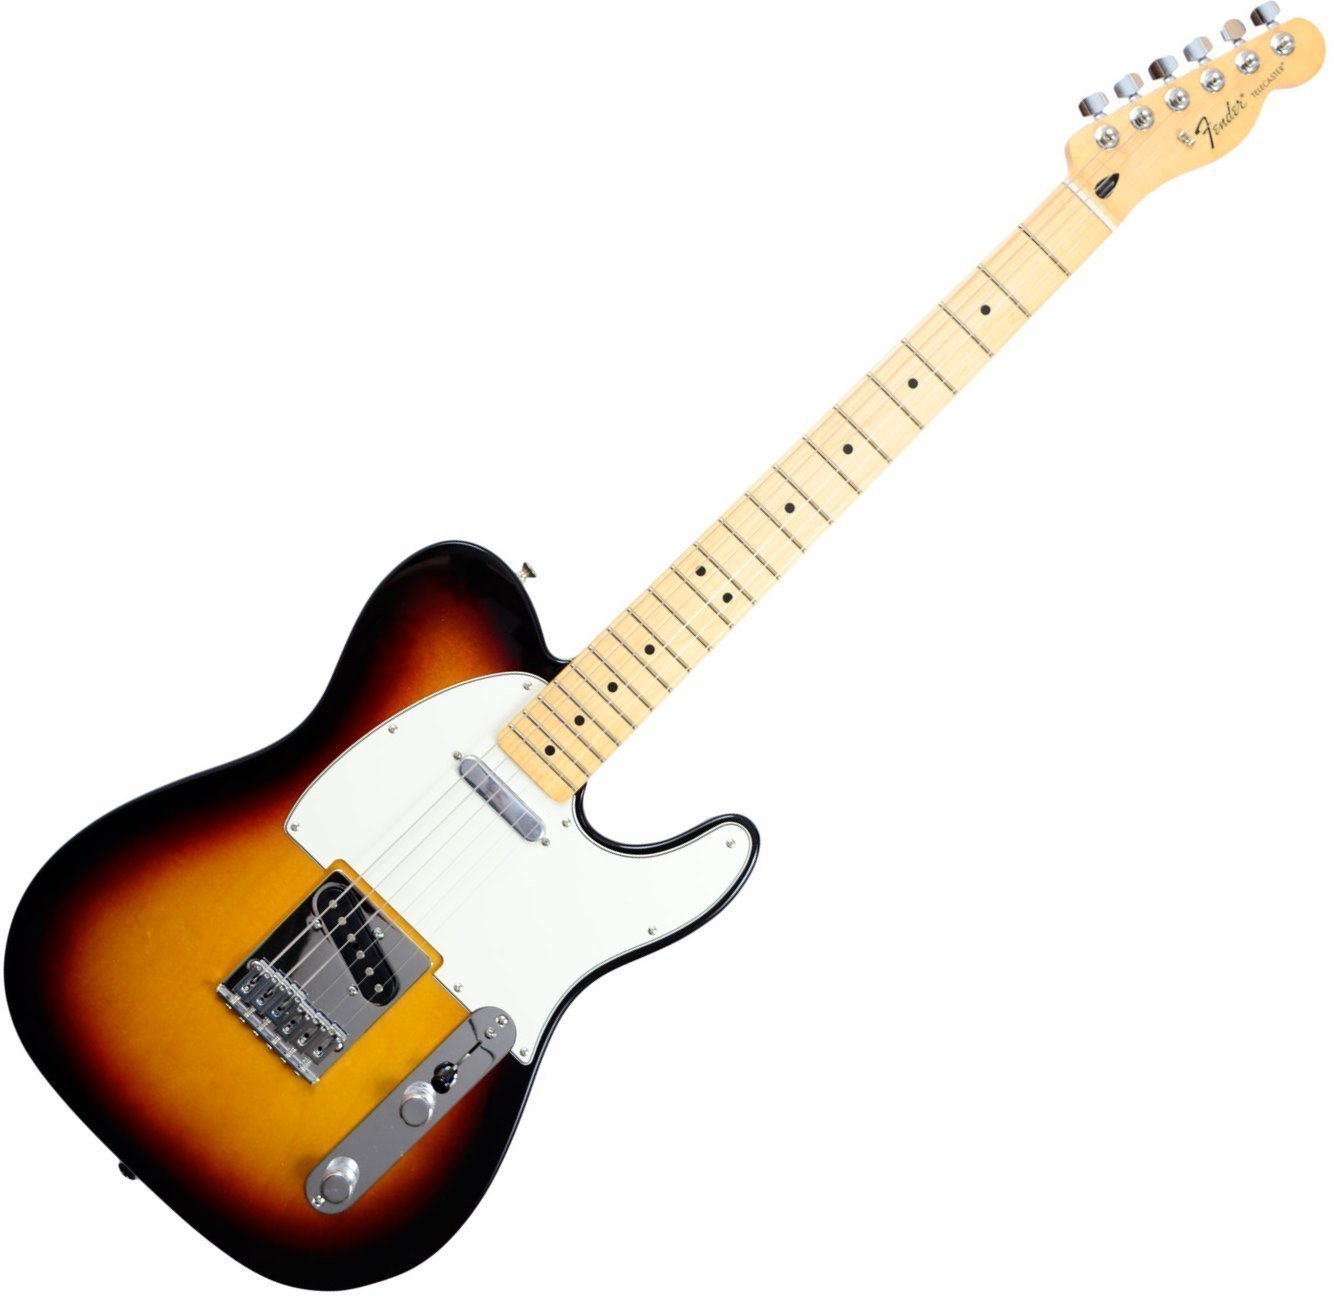 Ηλεκτρική Κιθάρα Fender Standard Telecaster Maple Fingerboard, Brown Sunburst